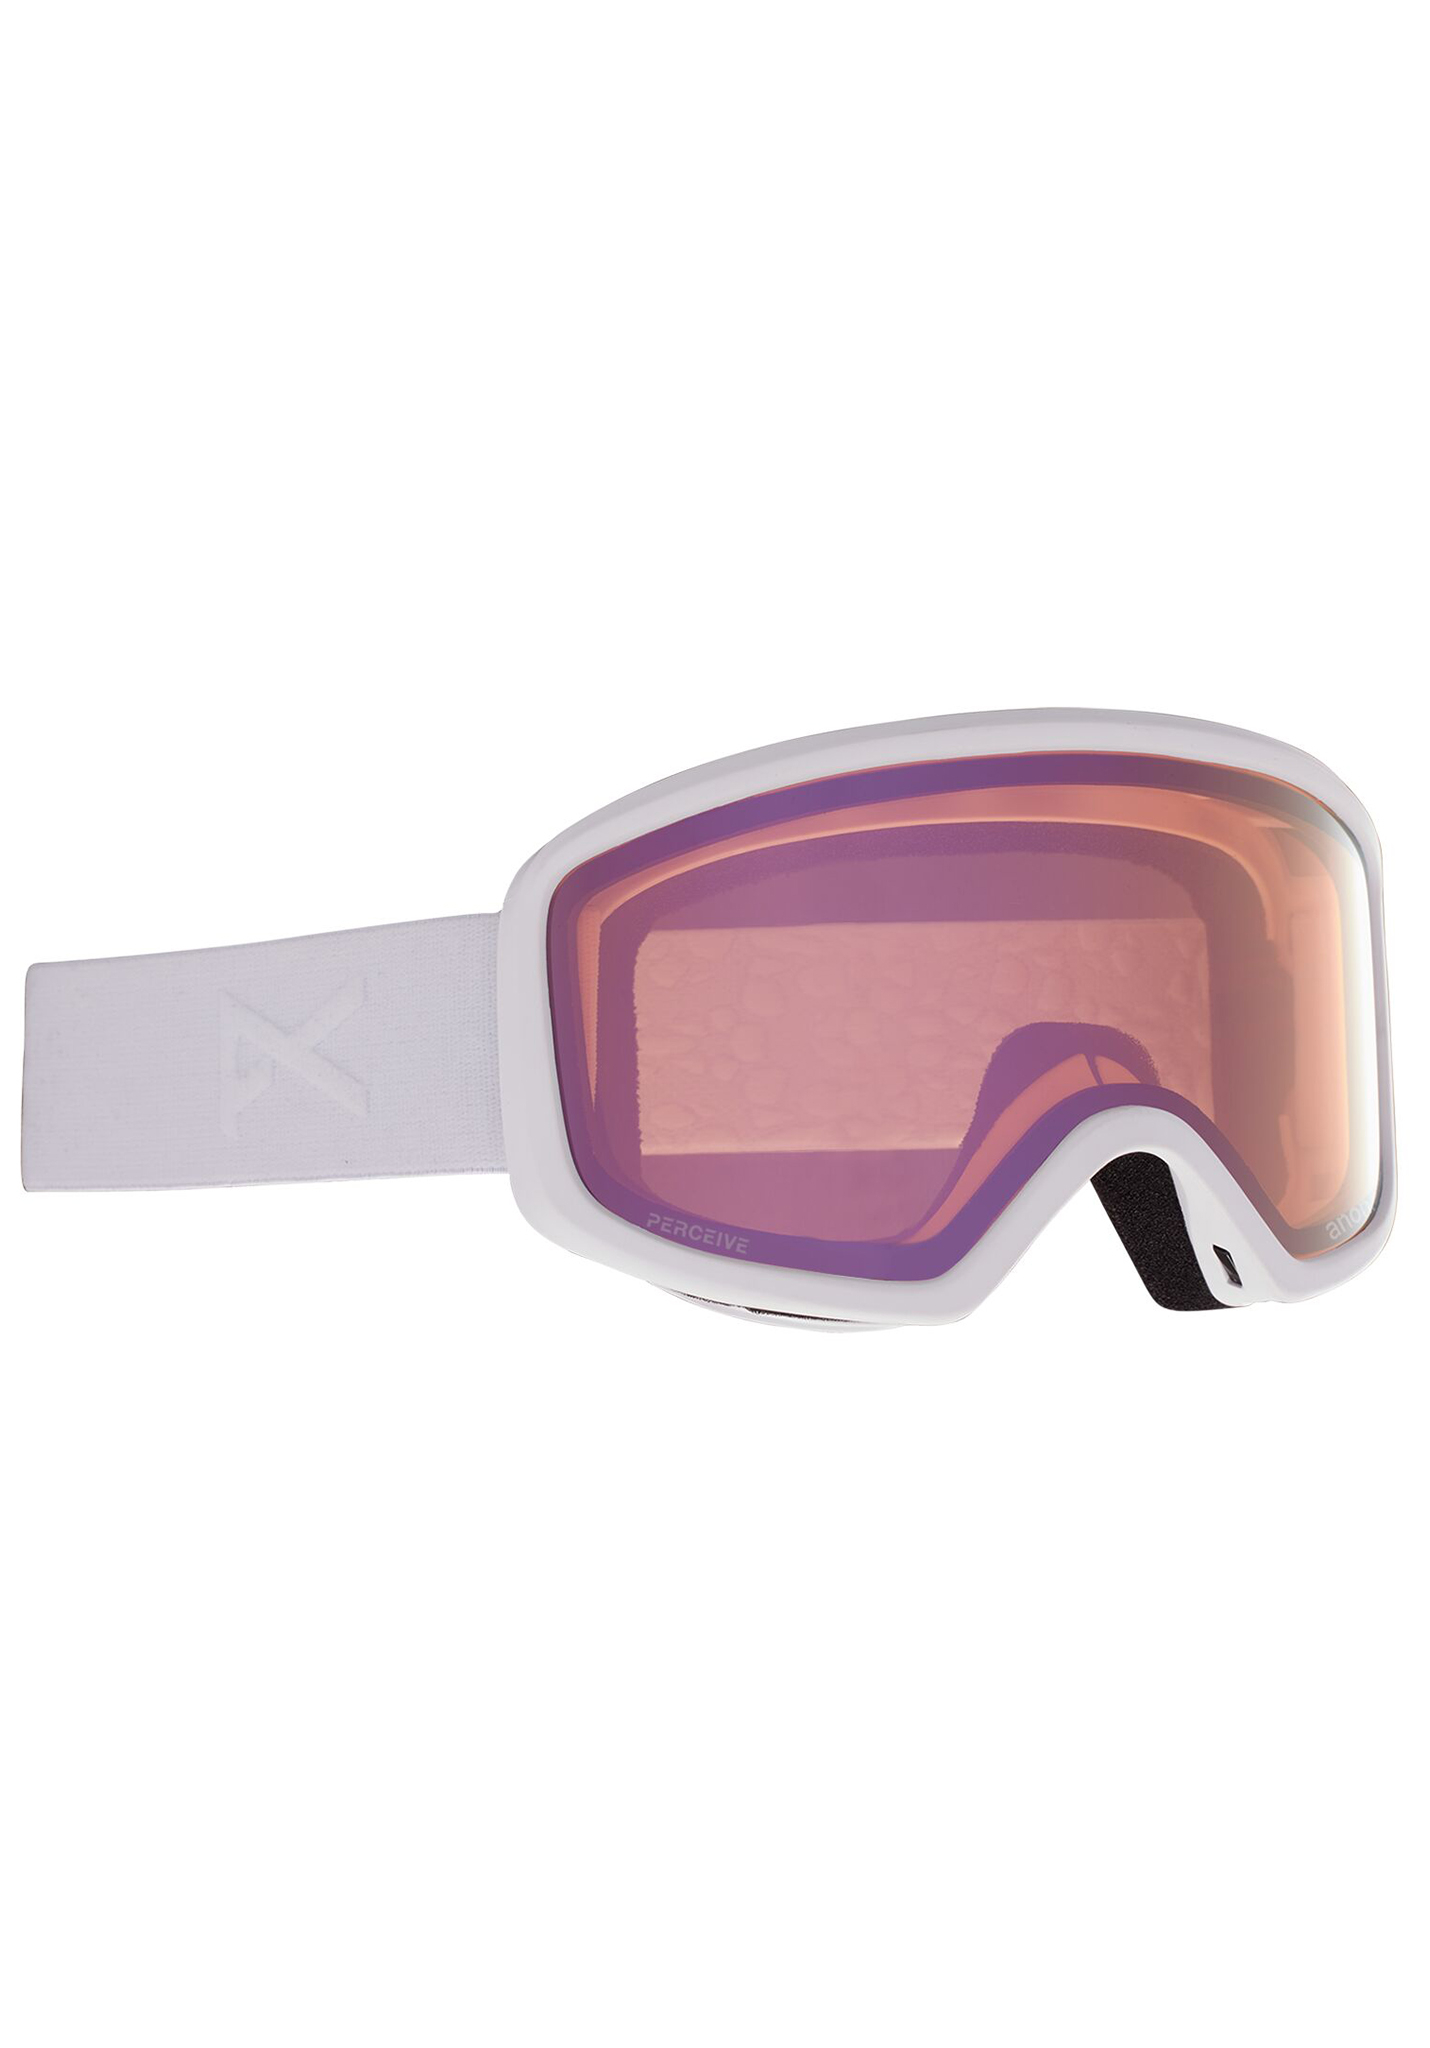 Anon Deringer MFI Snowboardbrillen weiß/prcv cldy rosa One Size